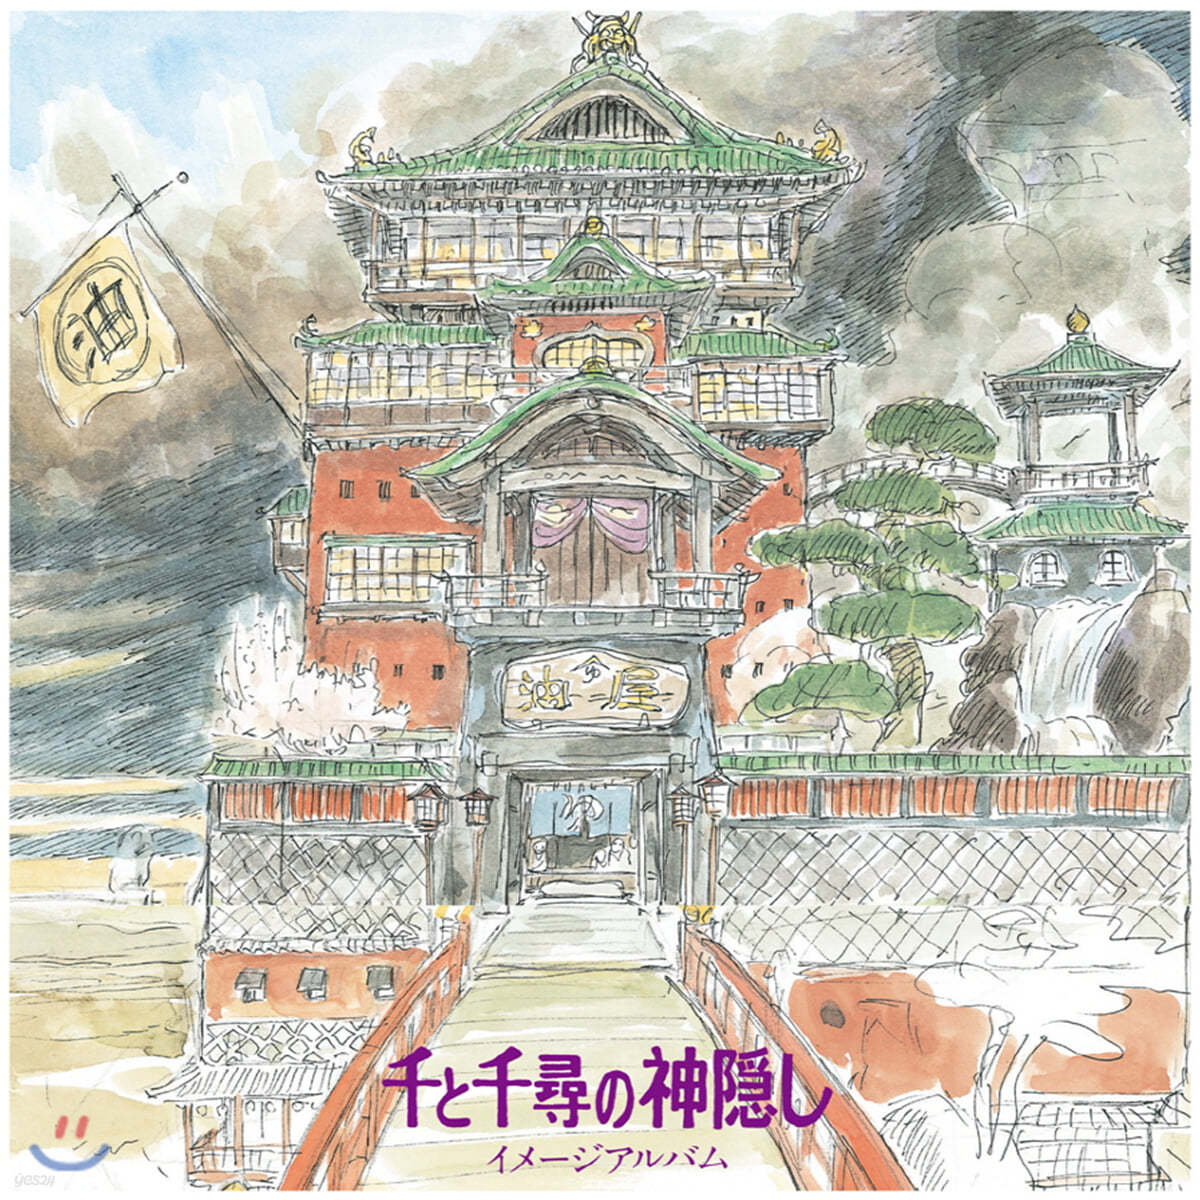 센과 치히로의 행방불명 이미지 앨범 (The Spiriting Away Of Sen And Chihiro Image Album by Joe Hisaishi 히사이시 조) [LP]